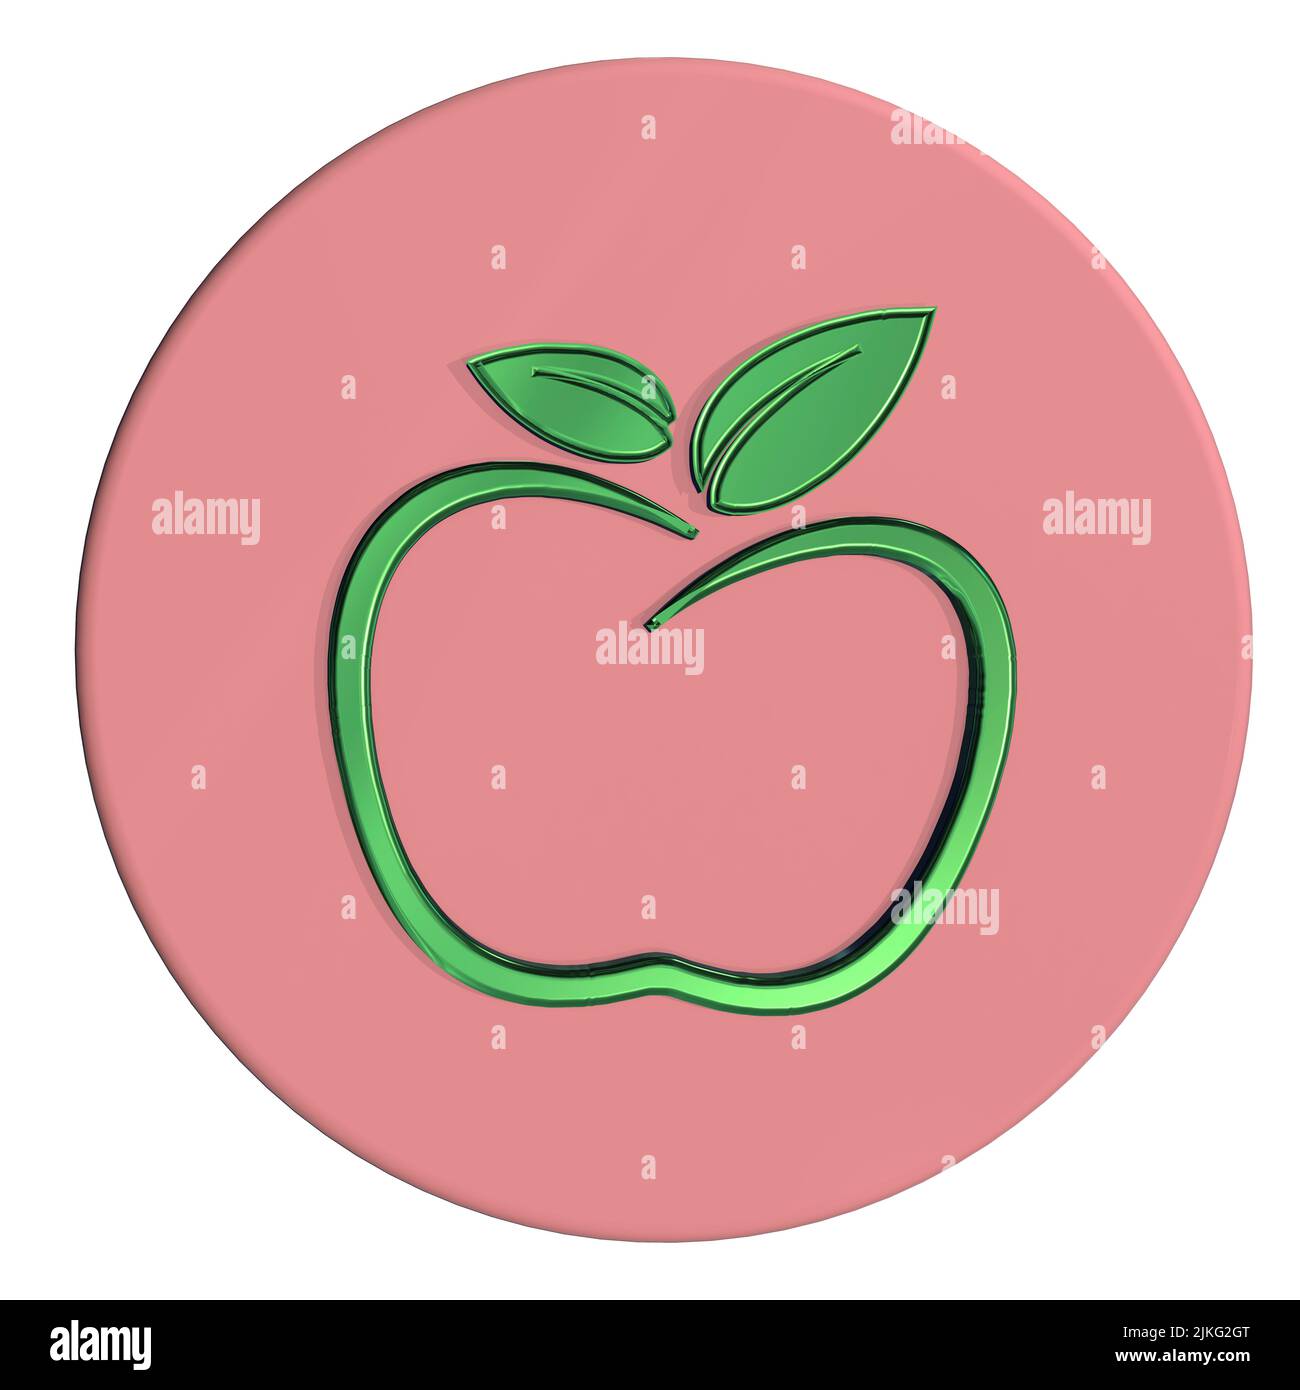 logotipo de diseño gráfico concepto de manzana concepto de dieta saludable concepto de estilo de vida saludable fondo blanco aislado Foto de stock